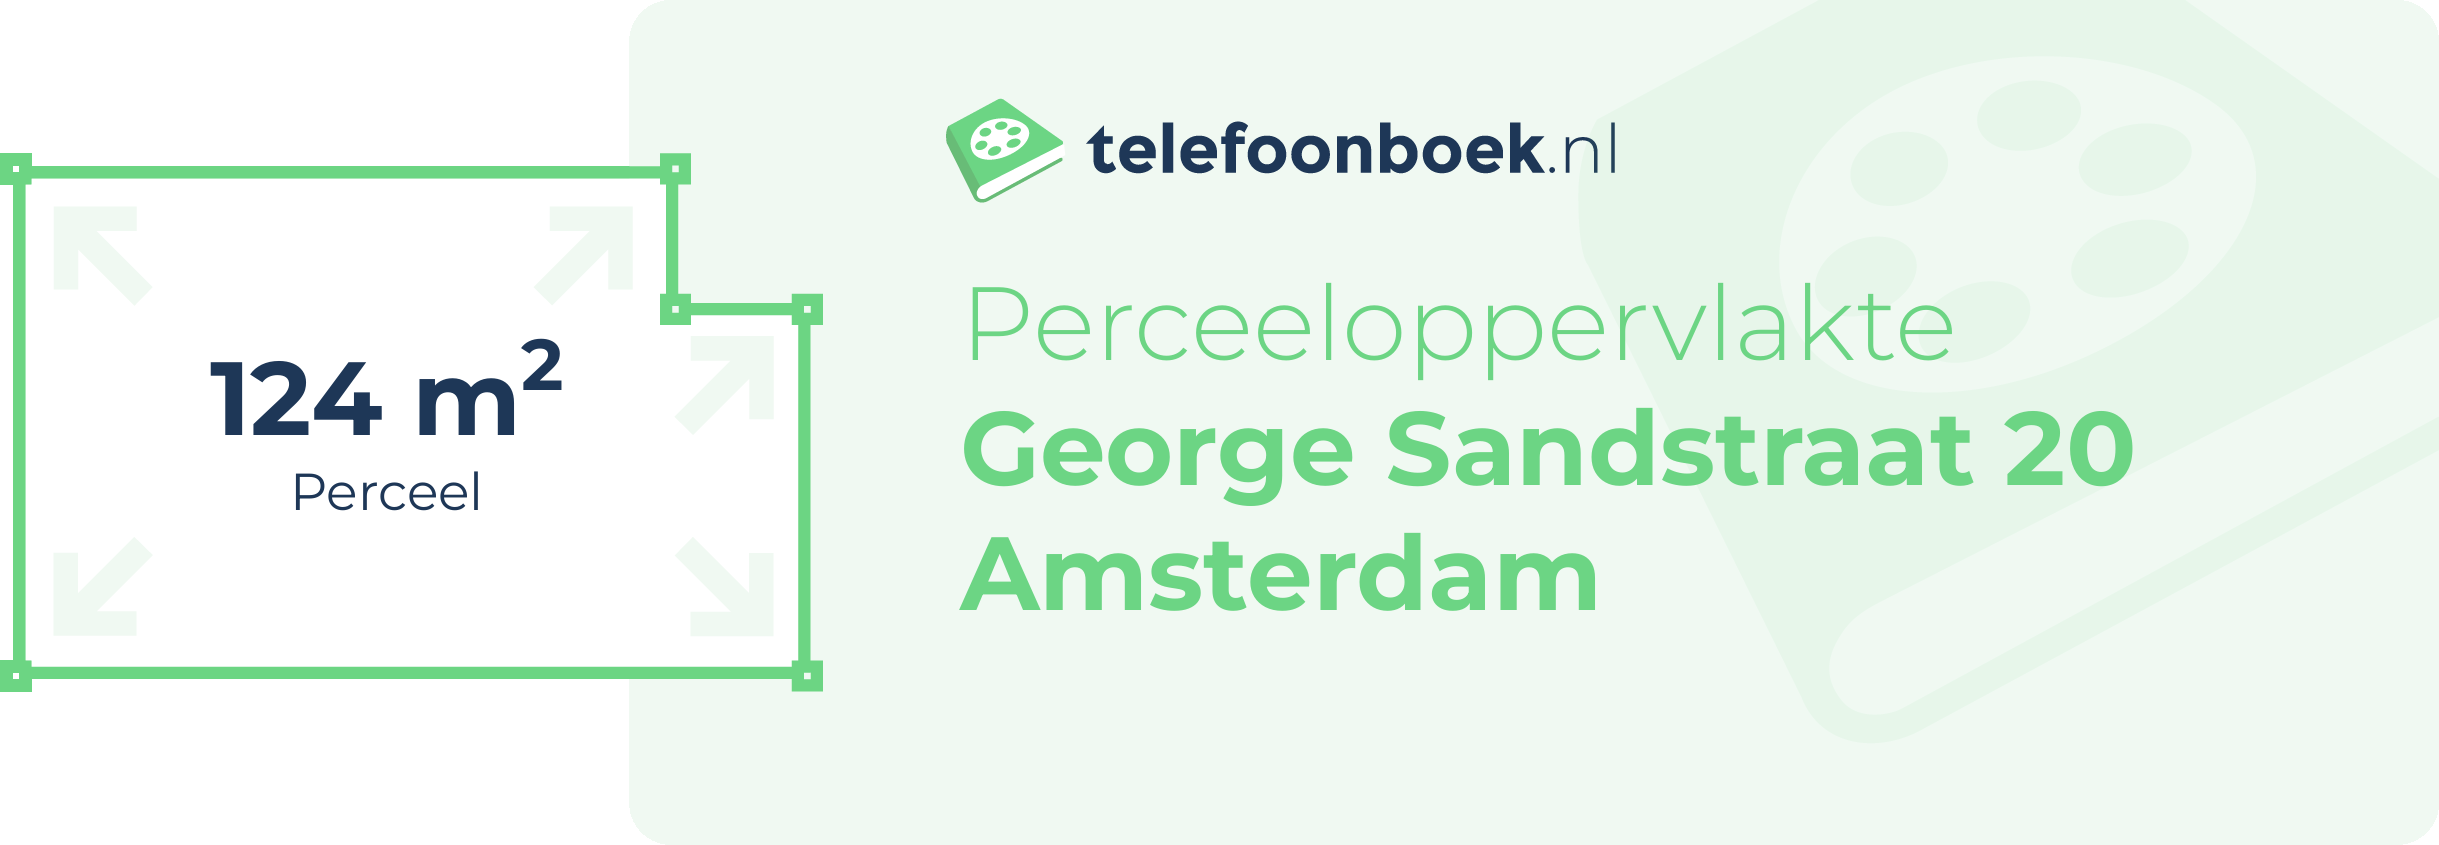 Perceeloppervlakte George Sandstraat 20 Amsterdam